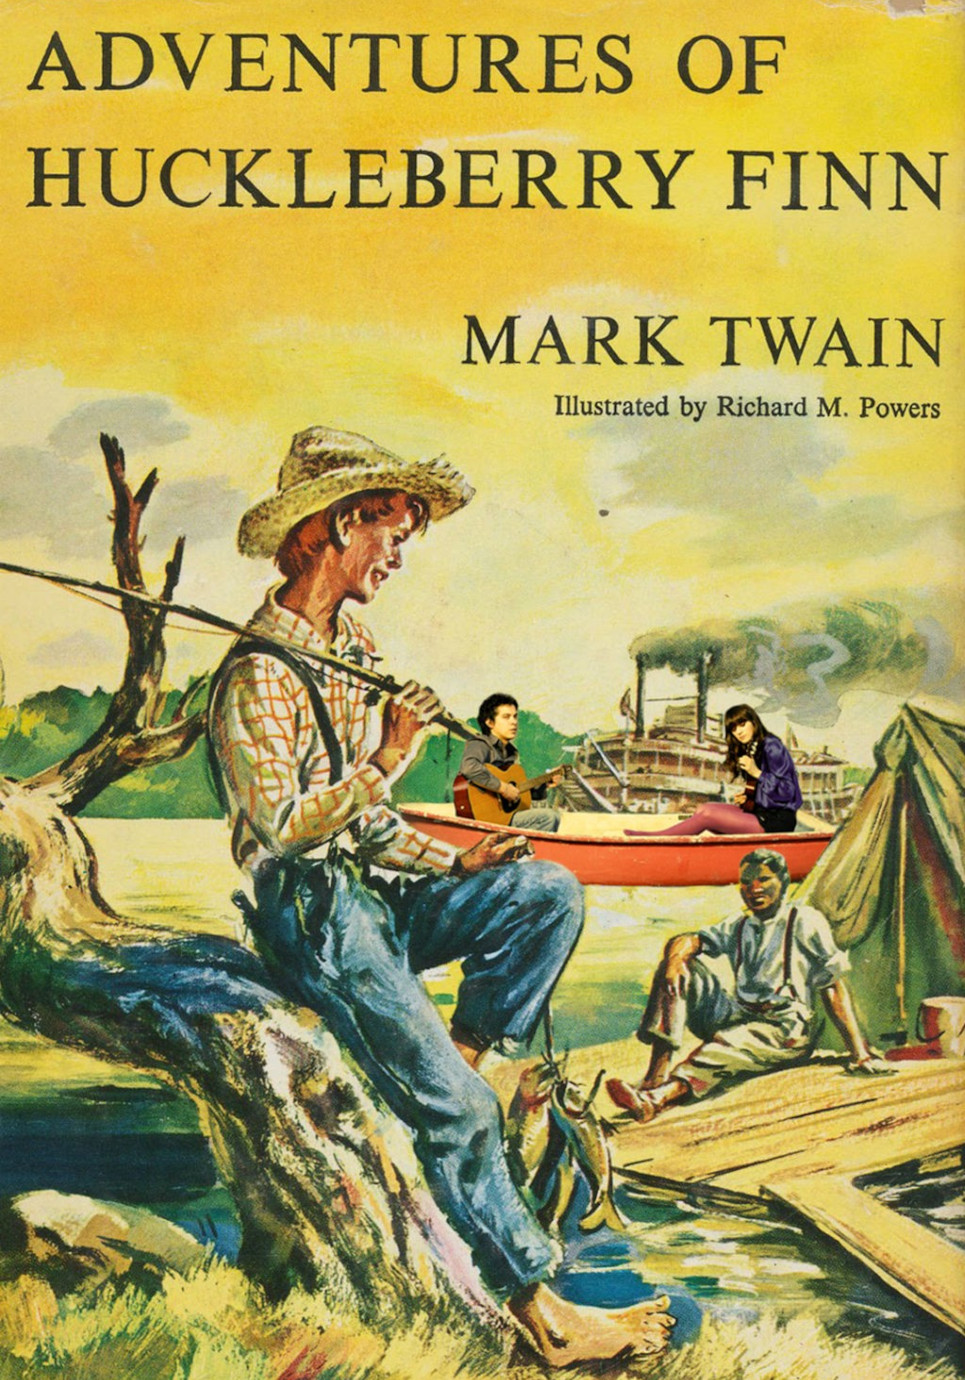 Adventures of Huckleberry Finn (Mark Twain, 2019)